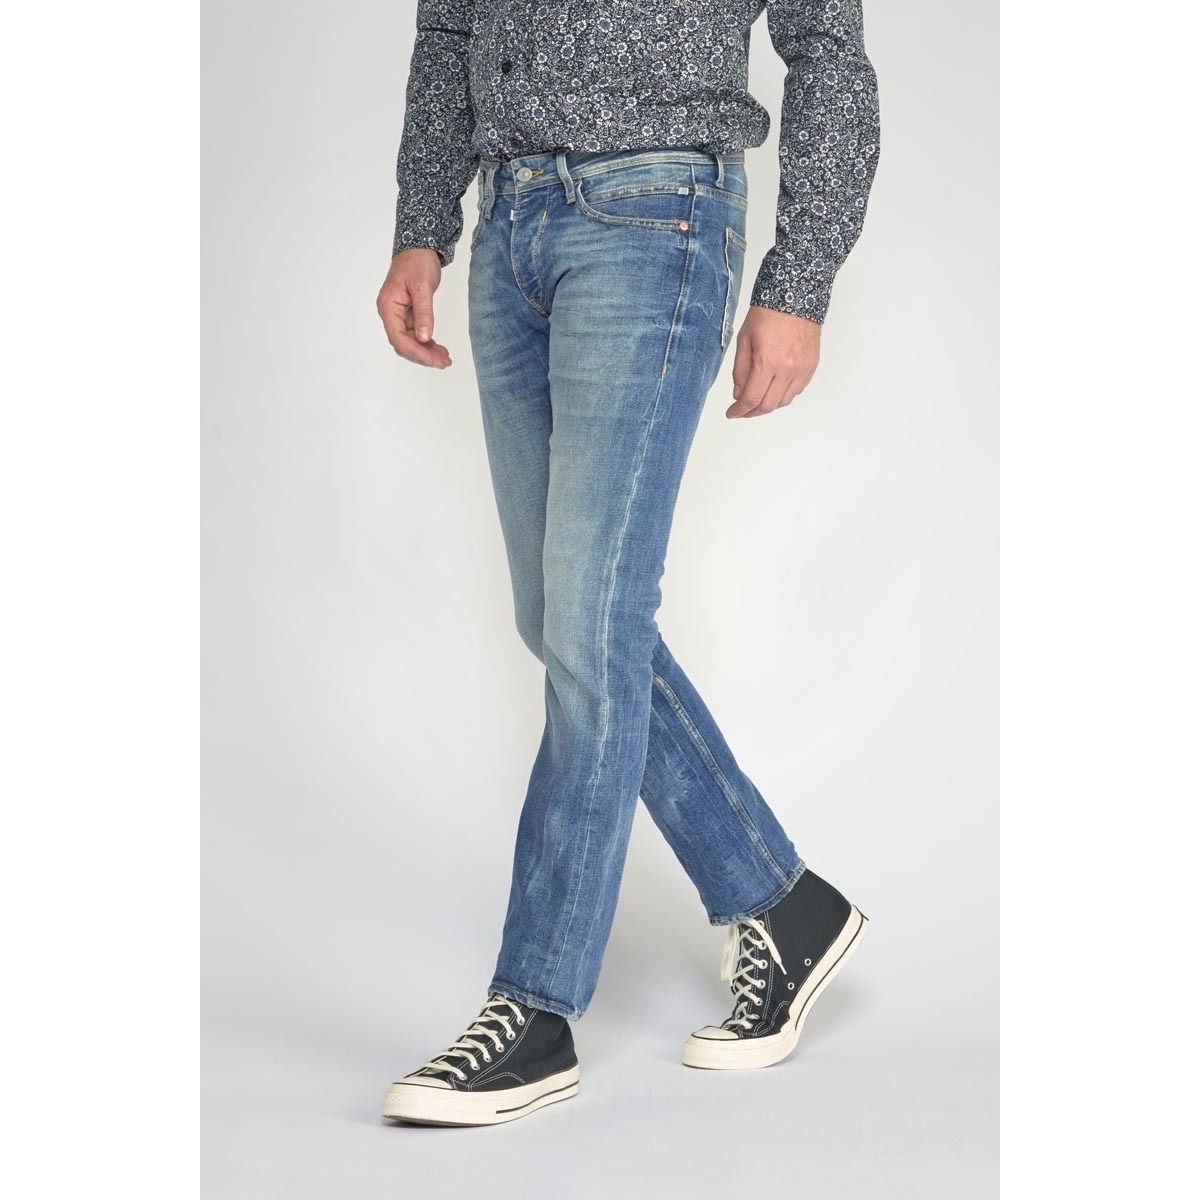 Le Temps des Cerises Bleu Maat 800/12 regular jeans vintage bleu D1BFsP31